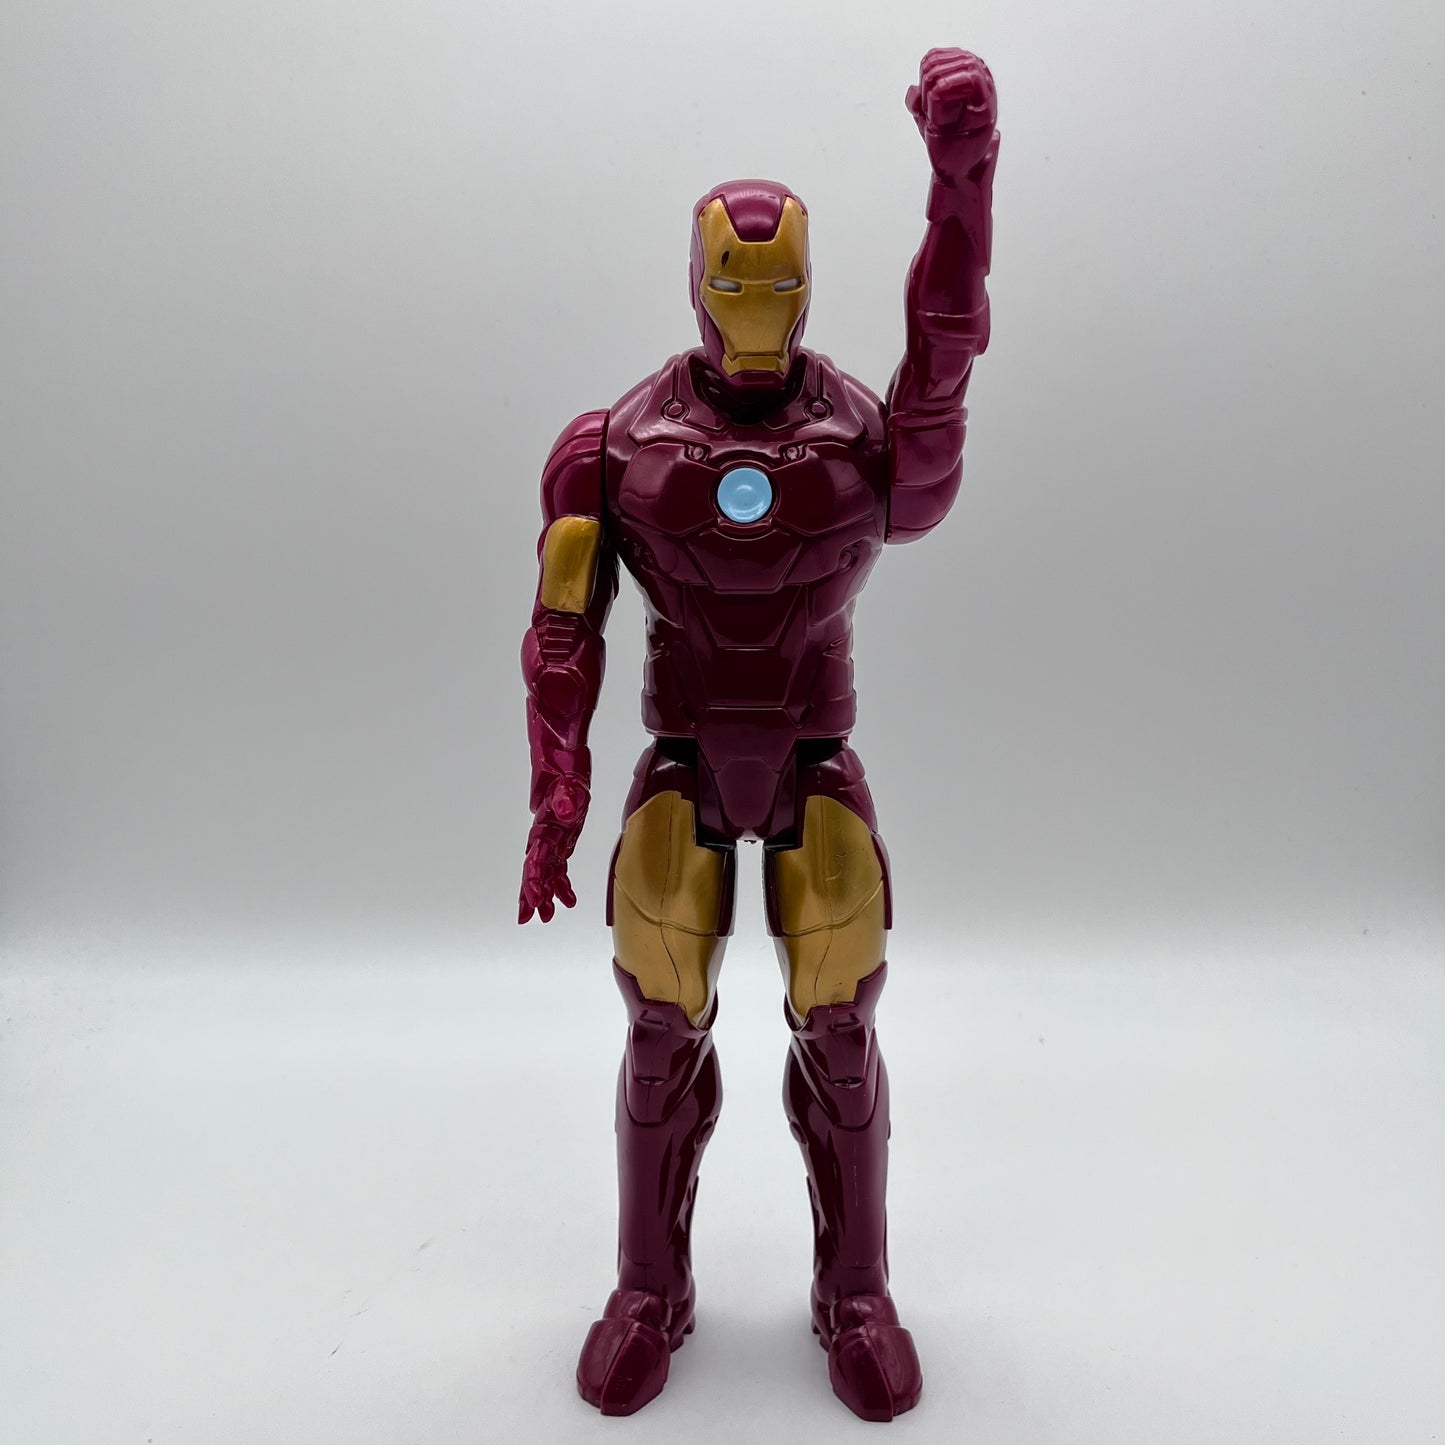 2013 Iron Man Action Figure 12”